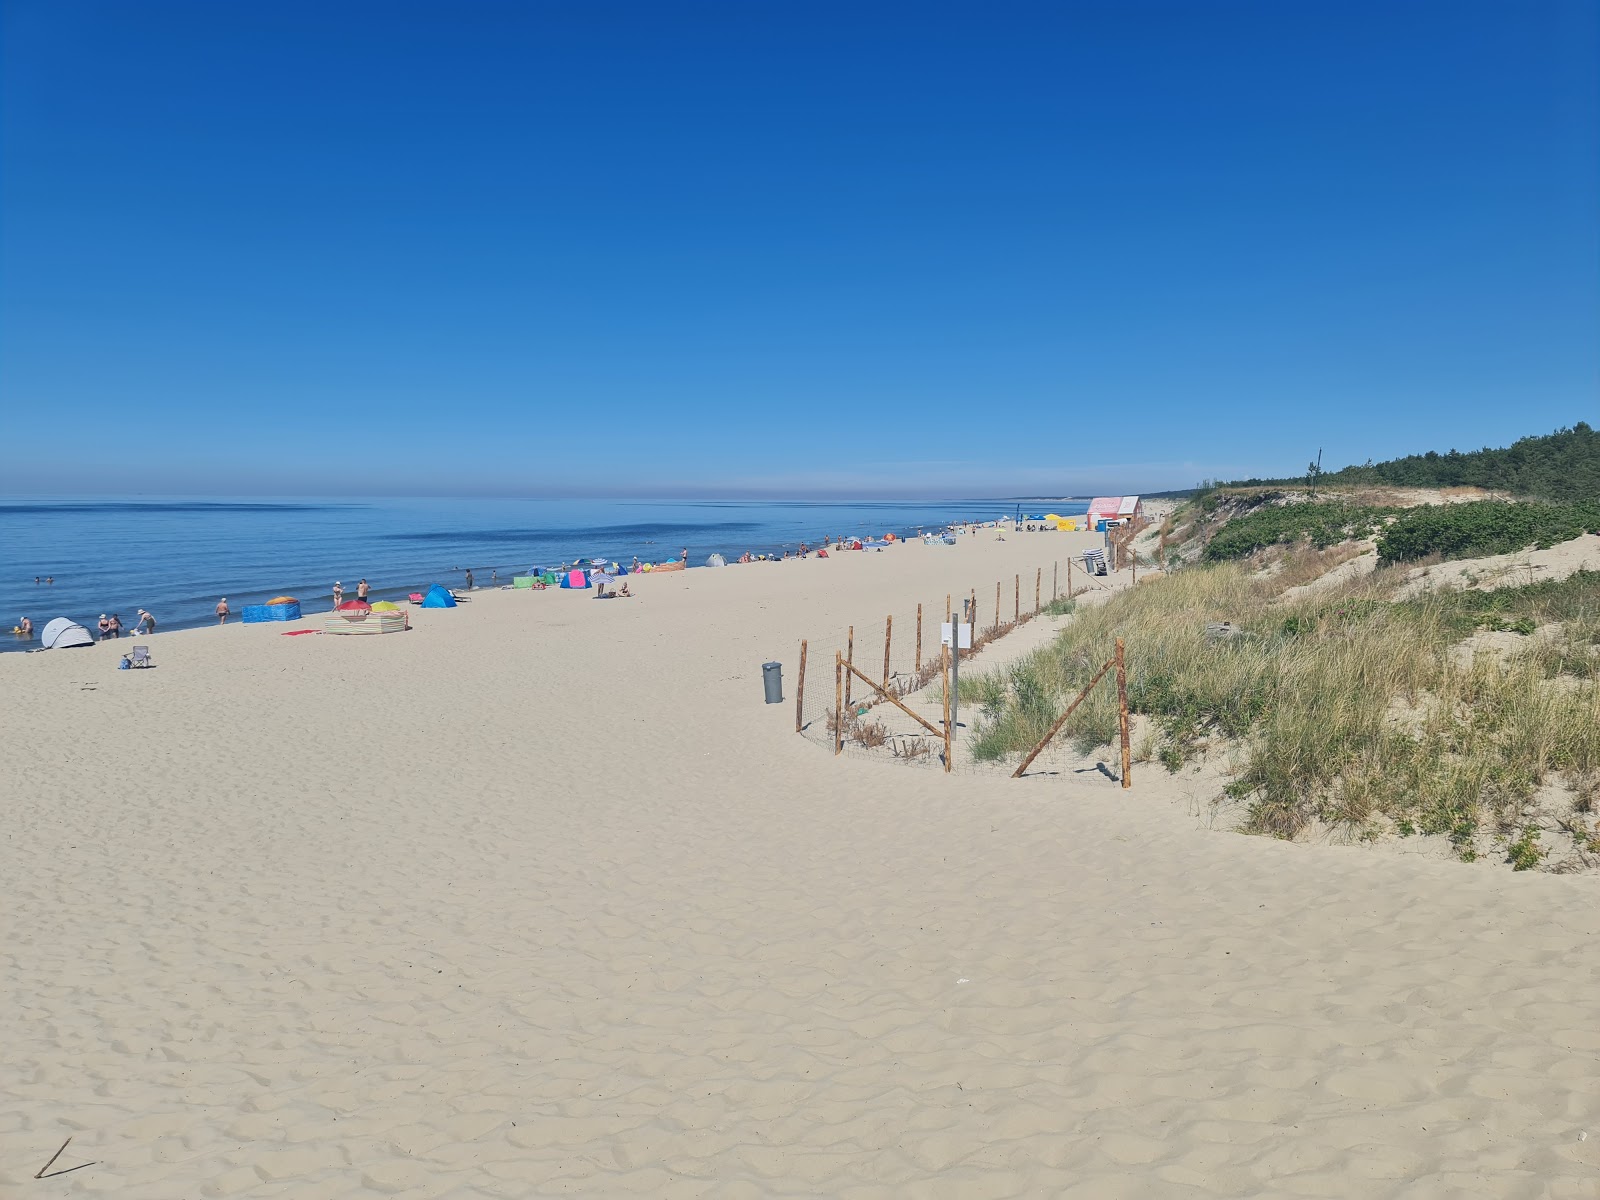 Foto af Piaski Rybacka beach med lang lige kyst